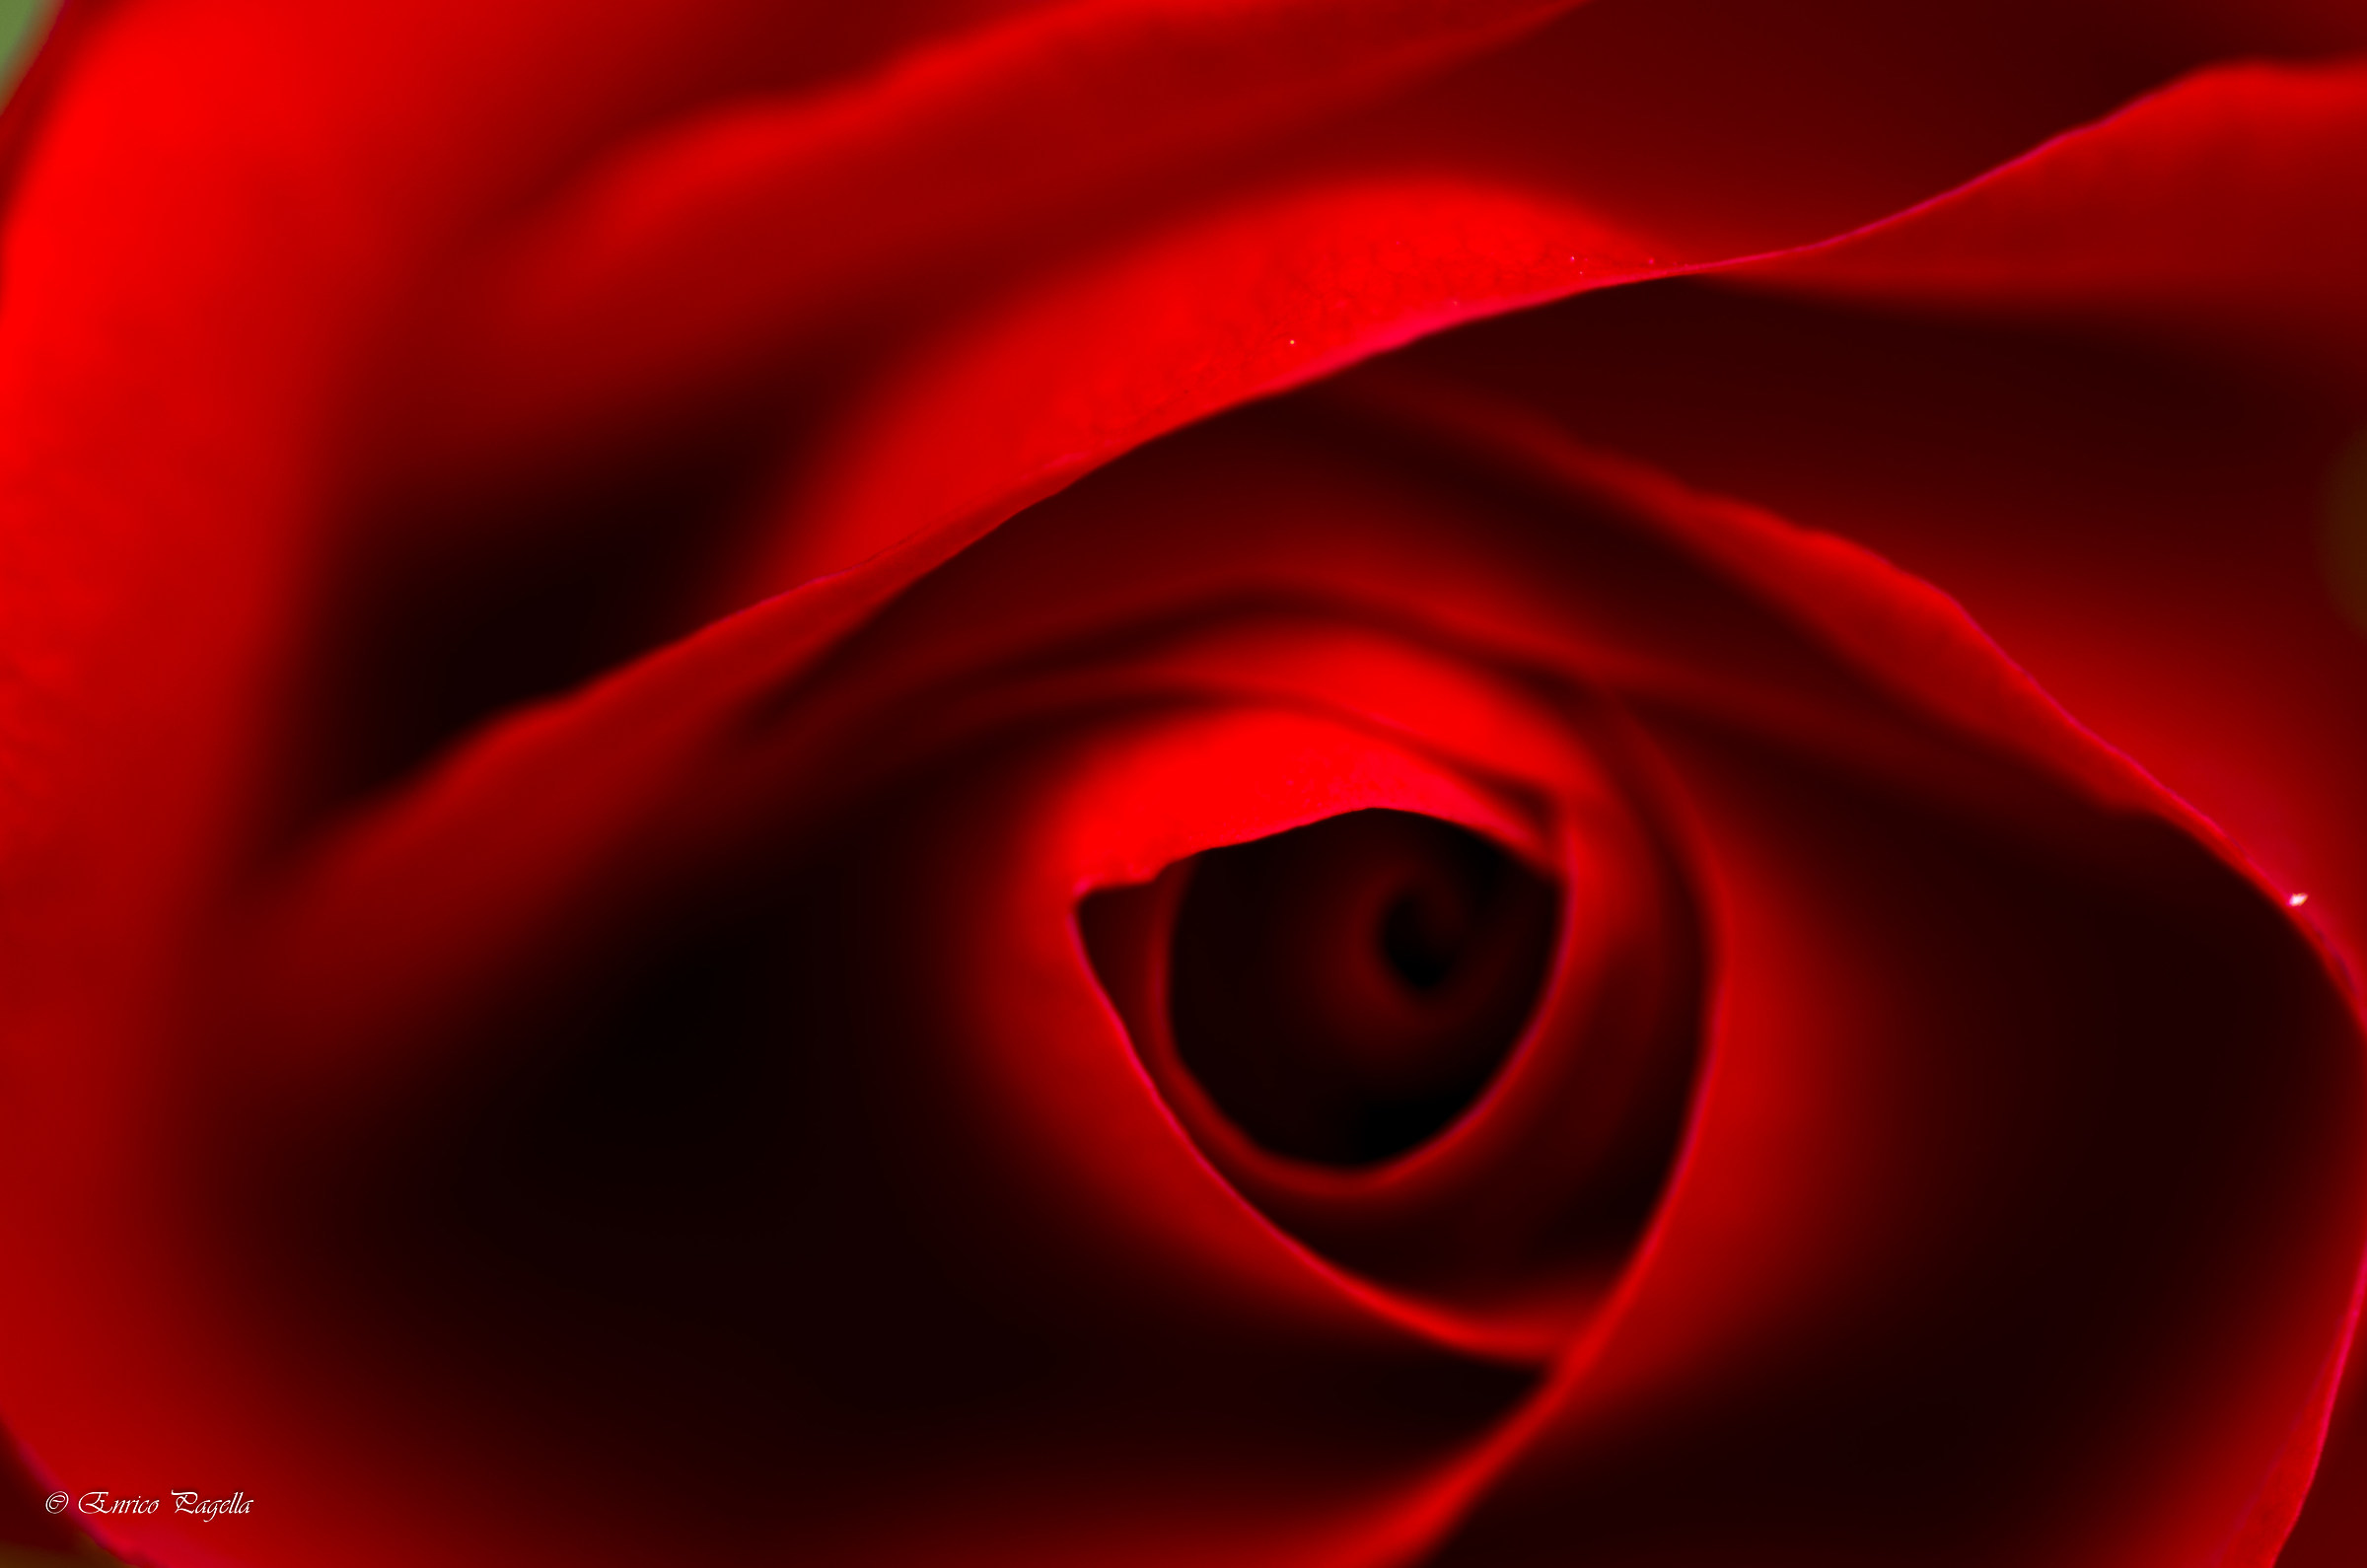 l'occhio di una rosa rossa...